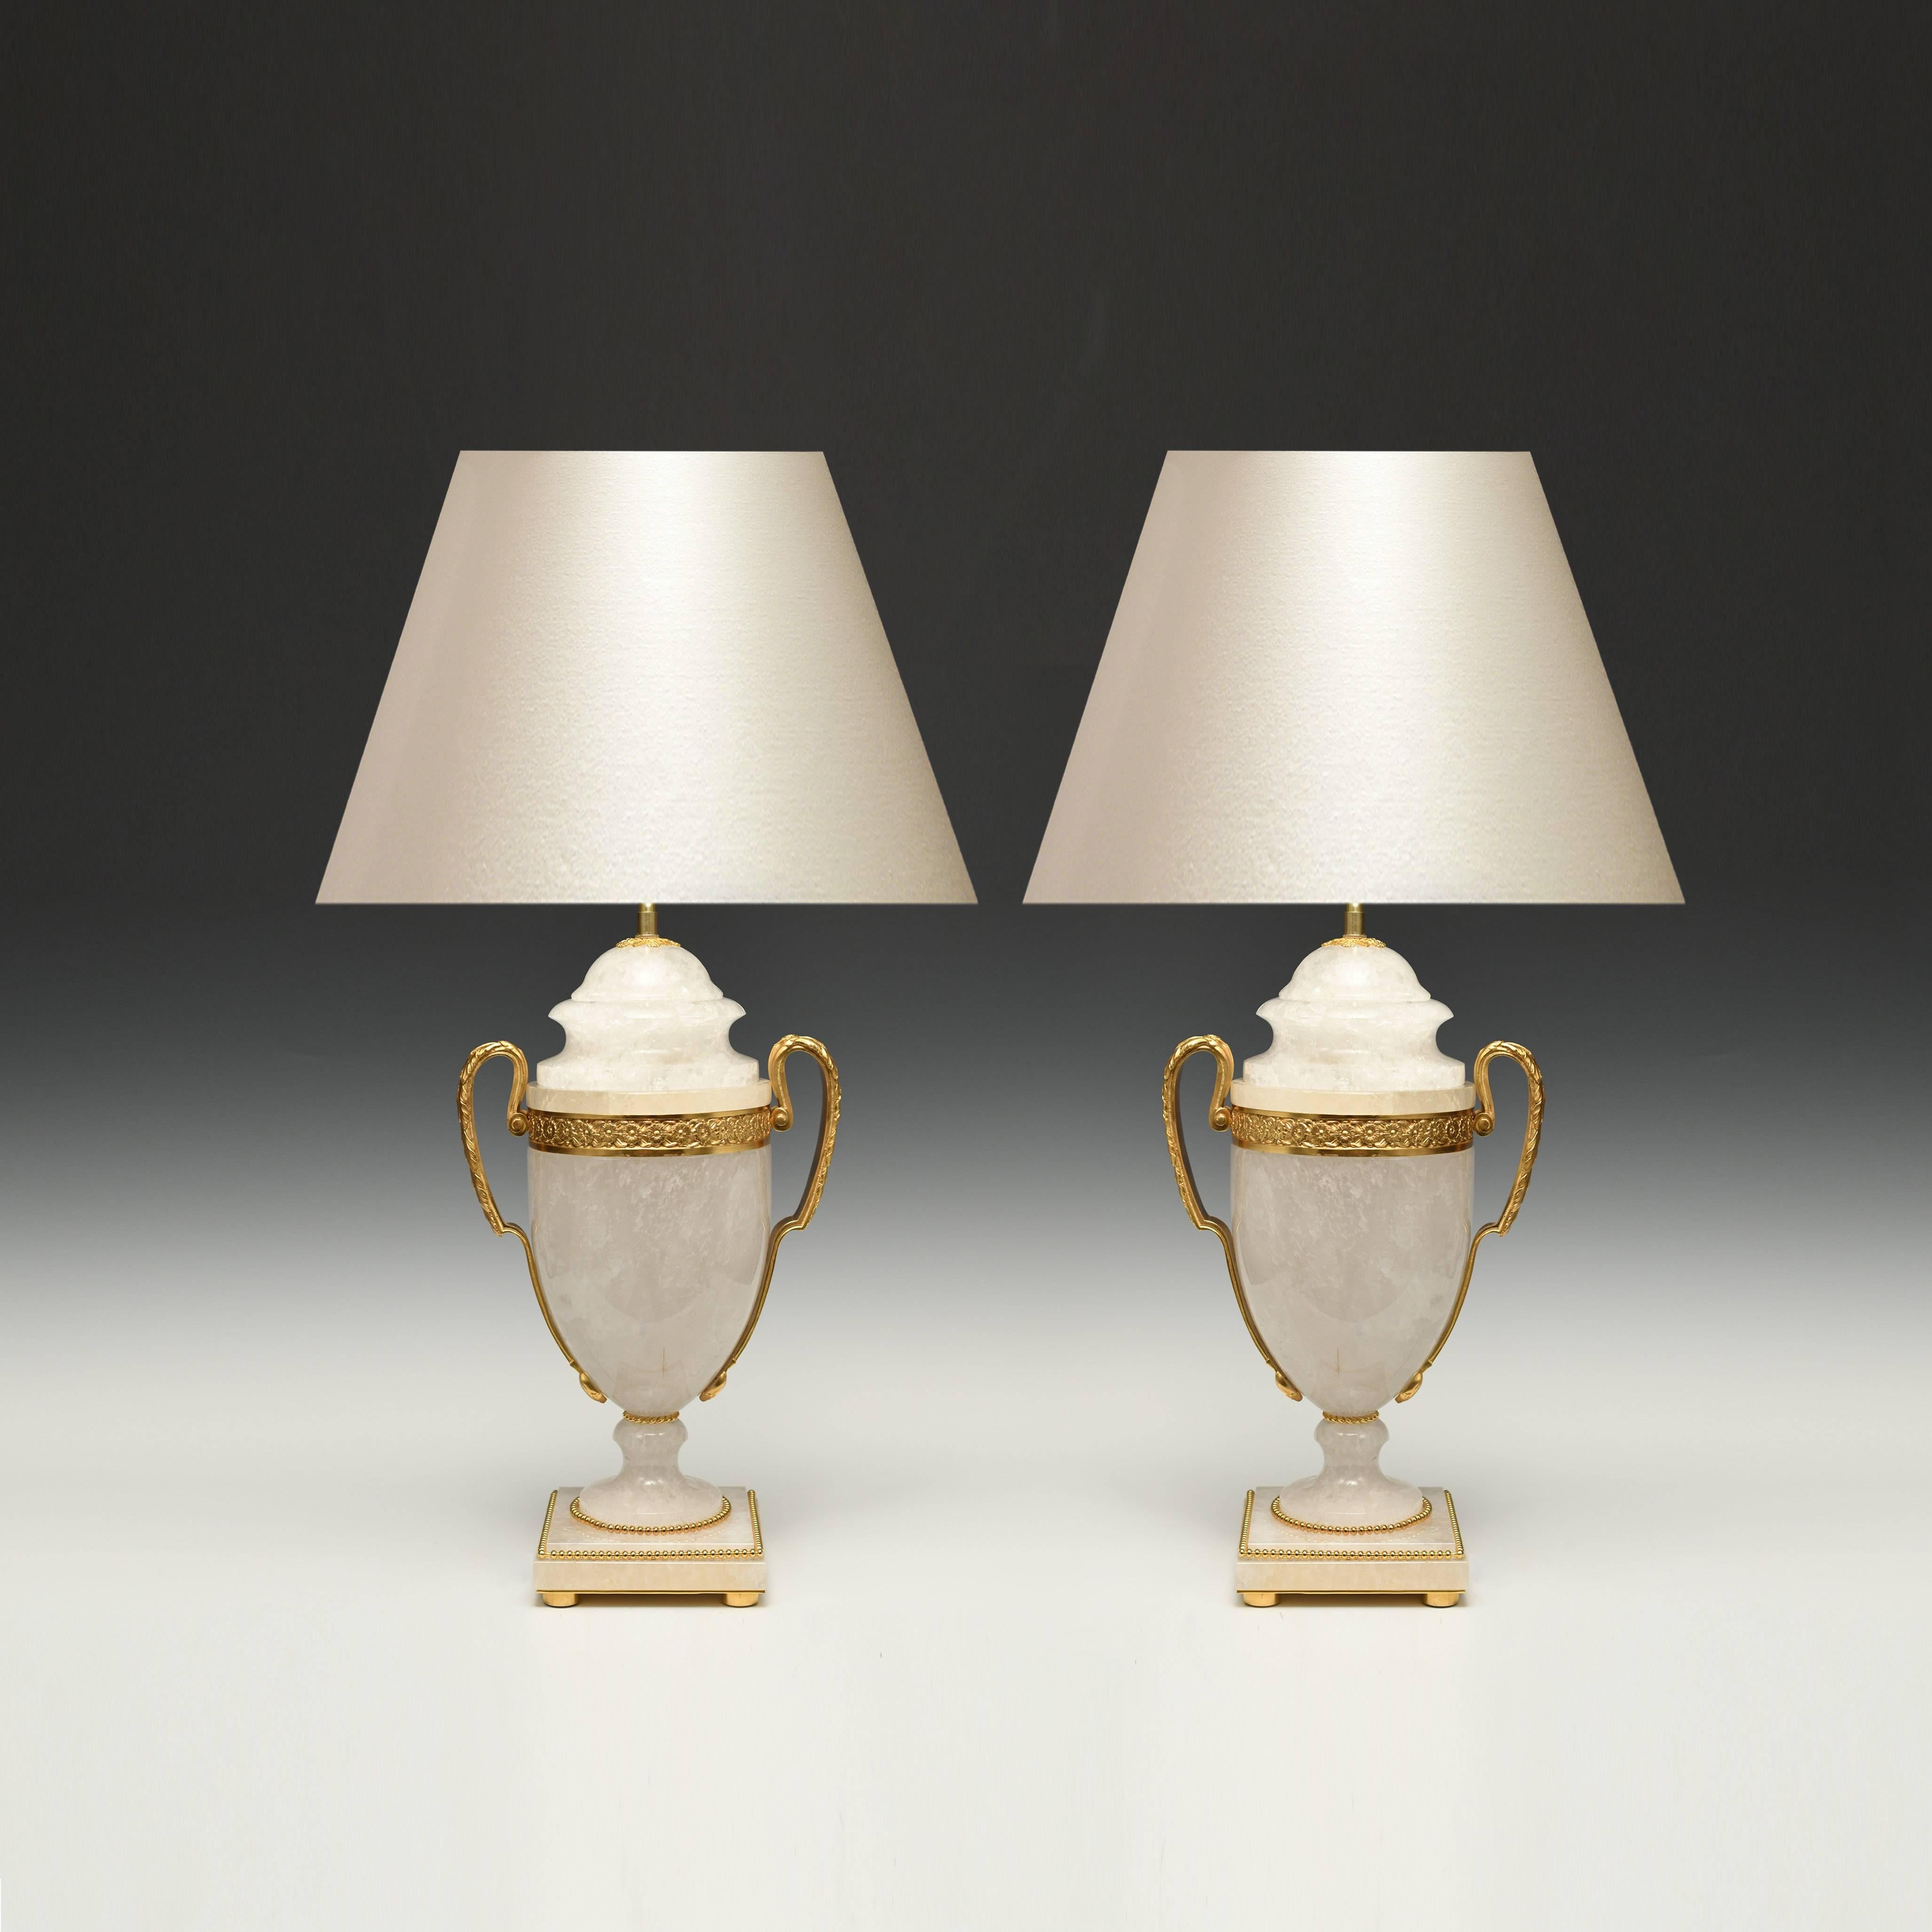 Une paire de lampes en cristal de roche en forme d'urne sculptée et montée en bronze doré. 
19 